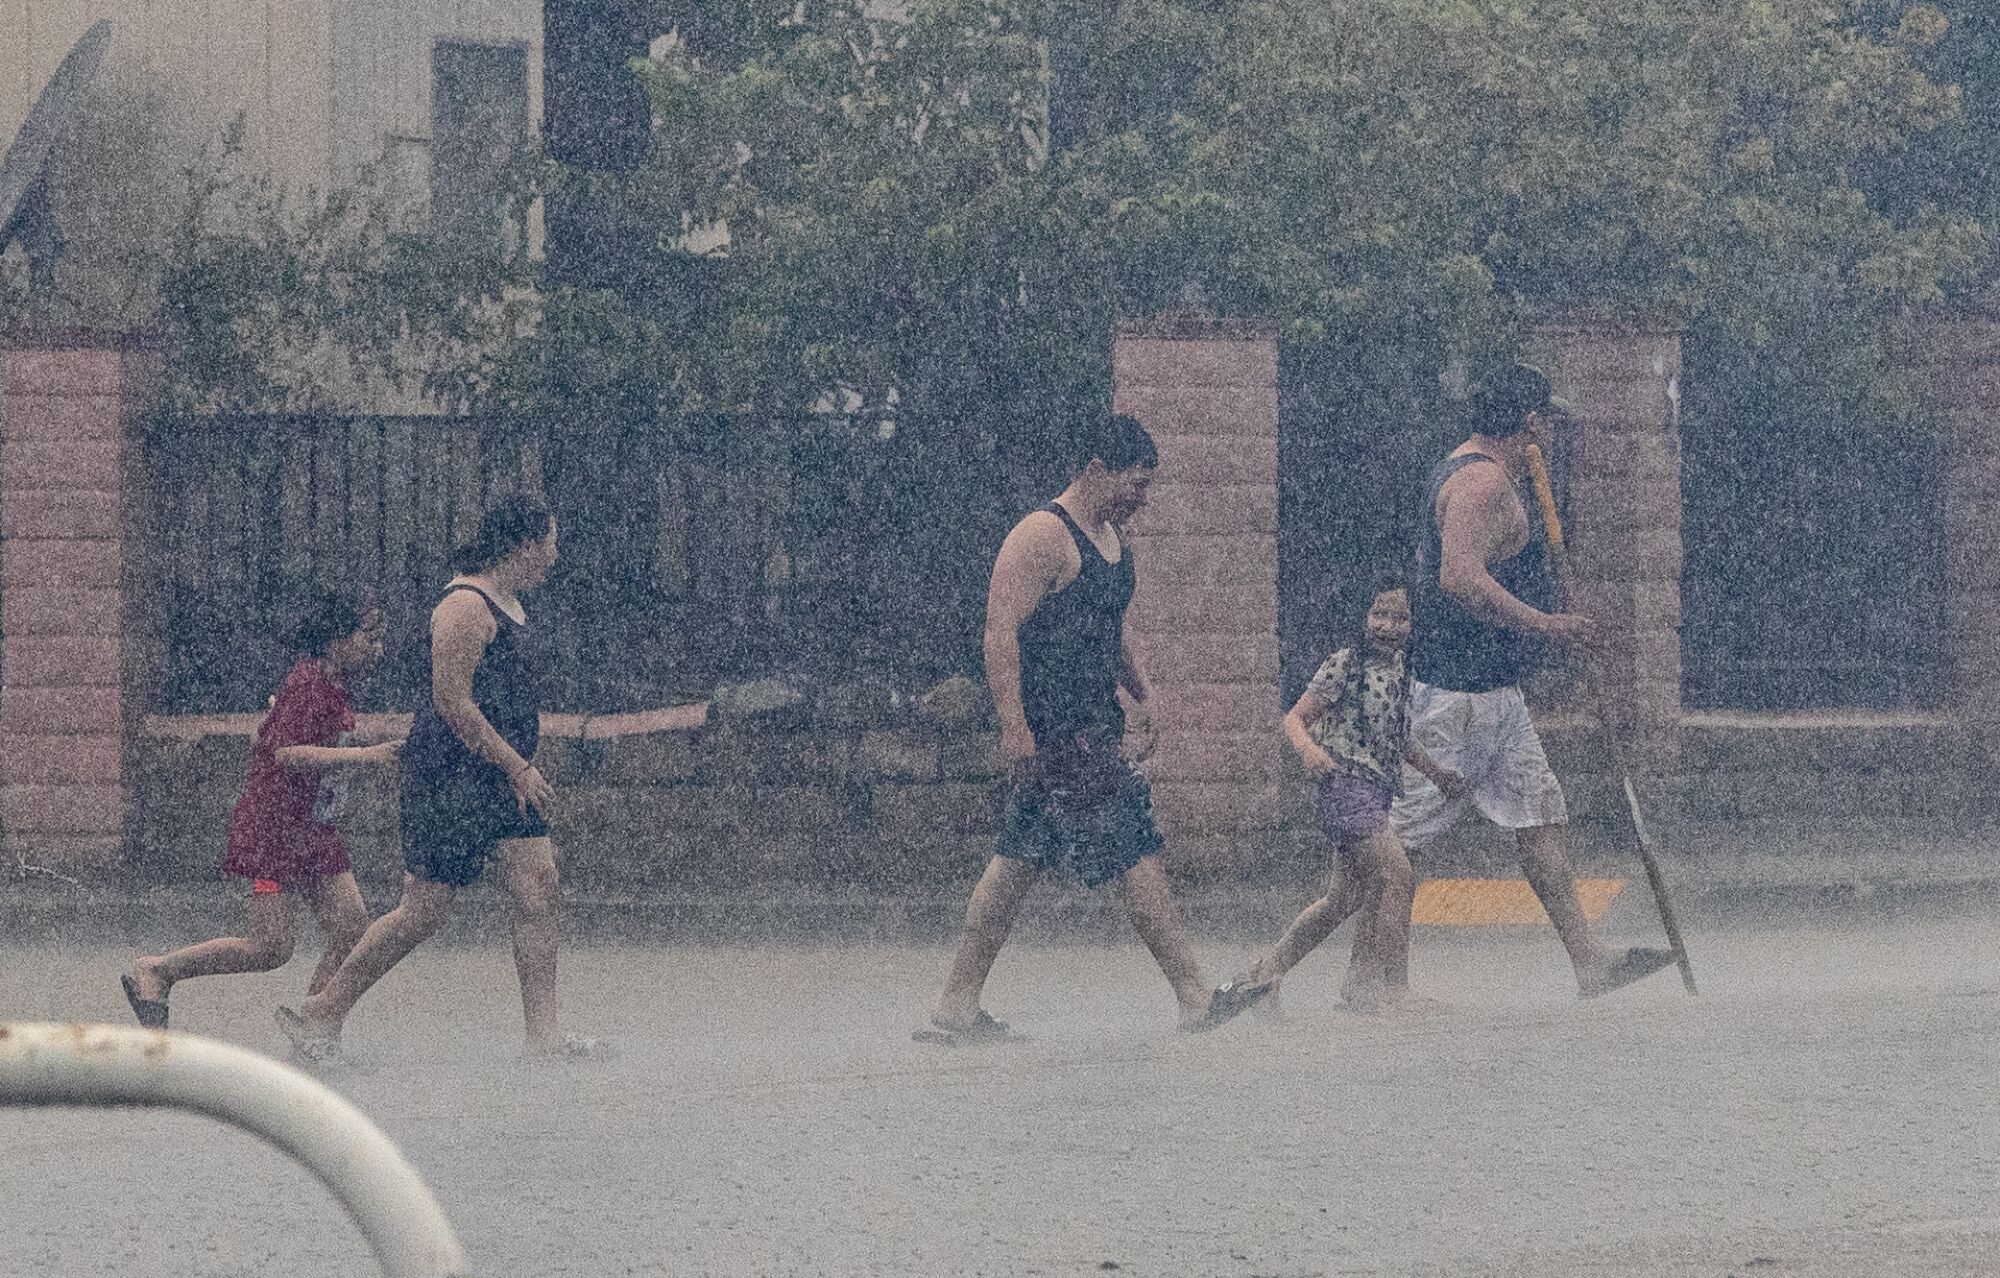 People walk across a street in the rain 